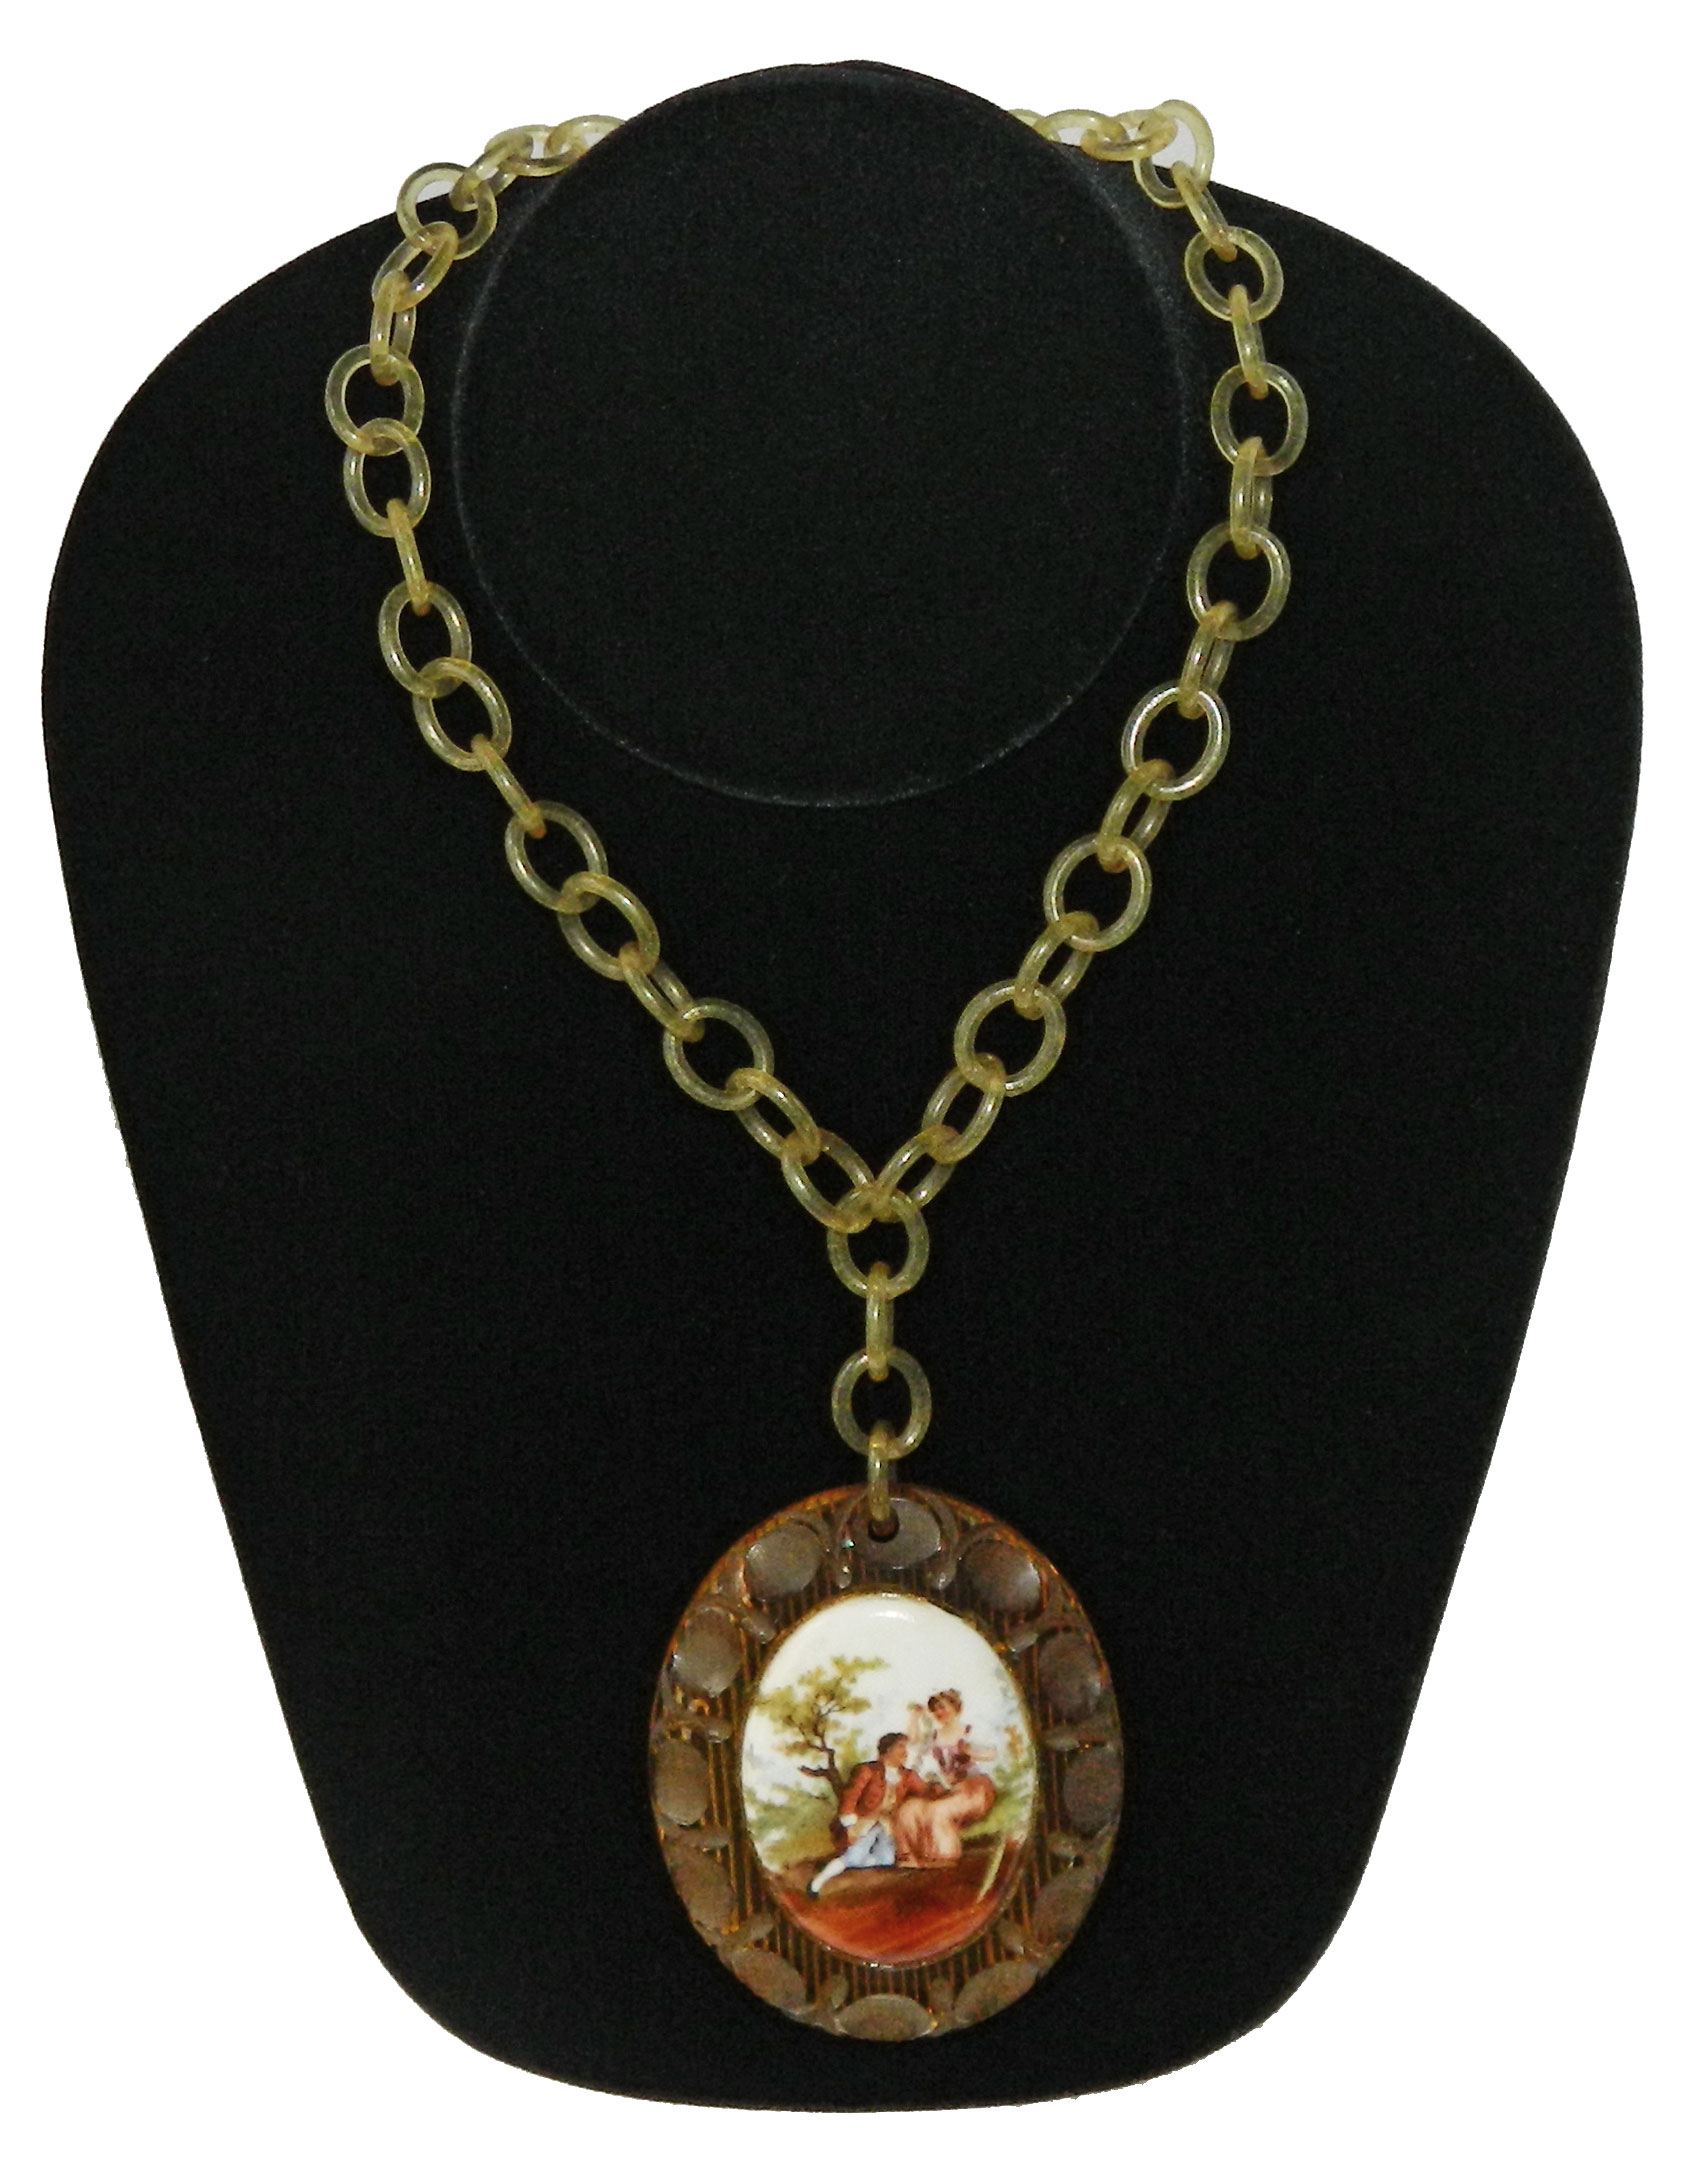 1930s bakelite pendant necklace